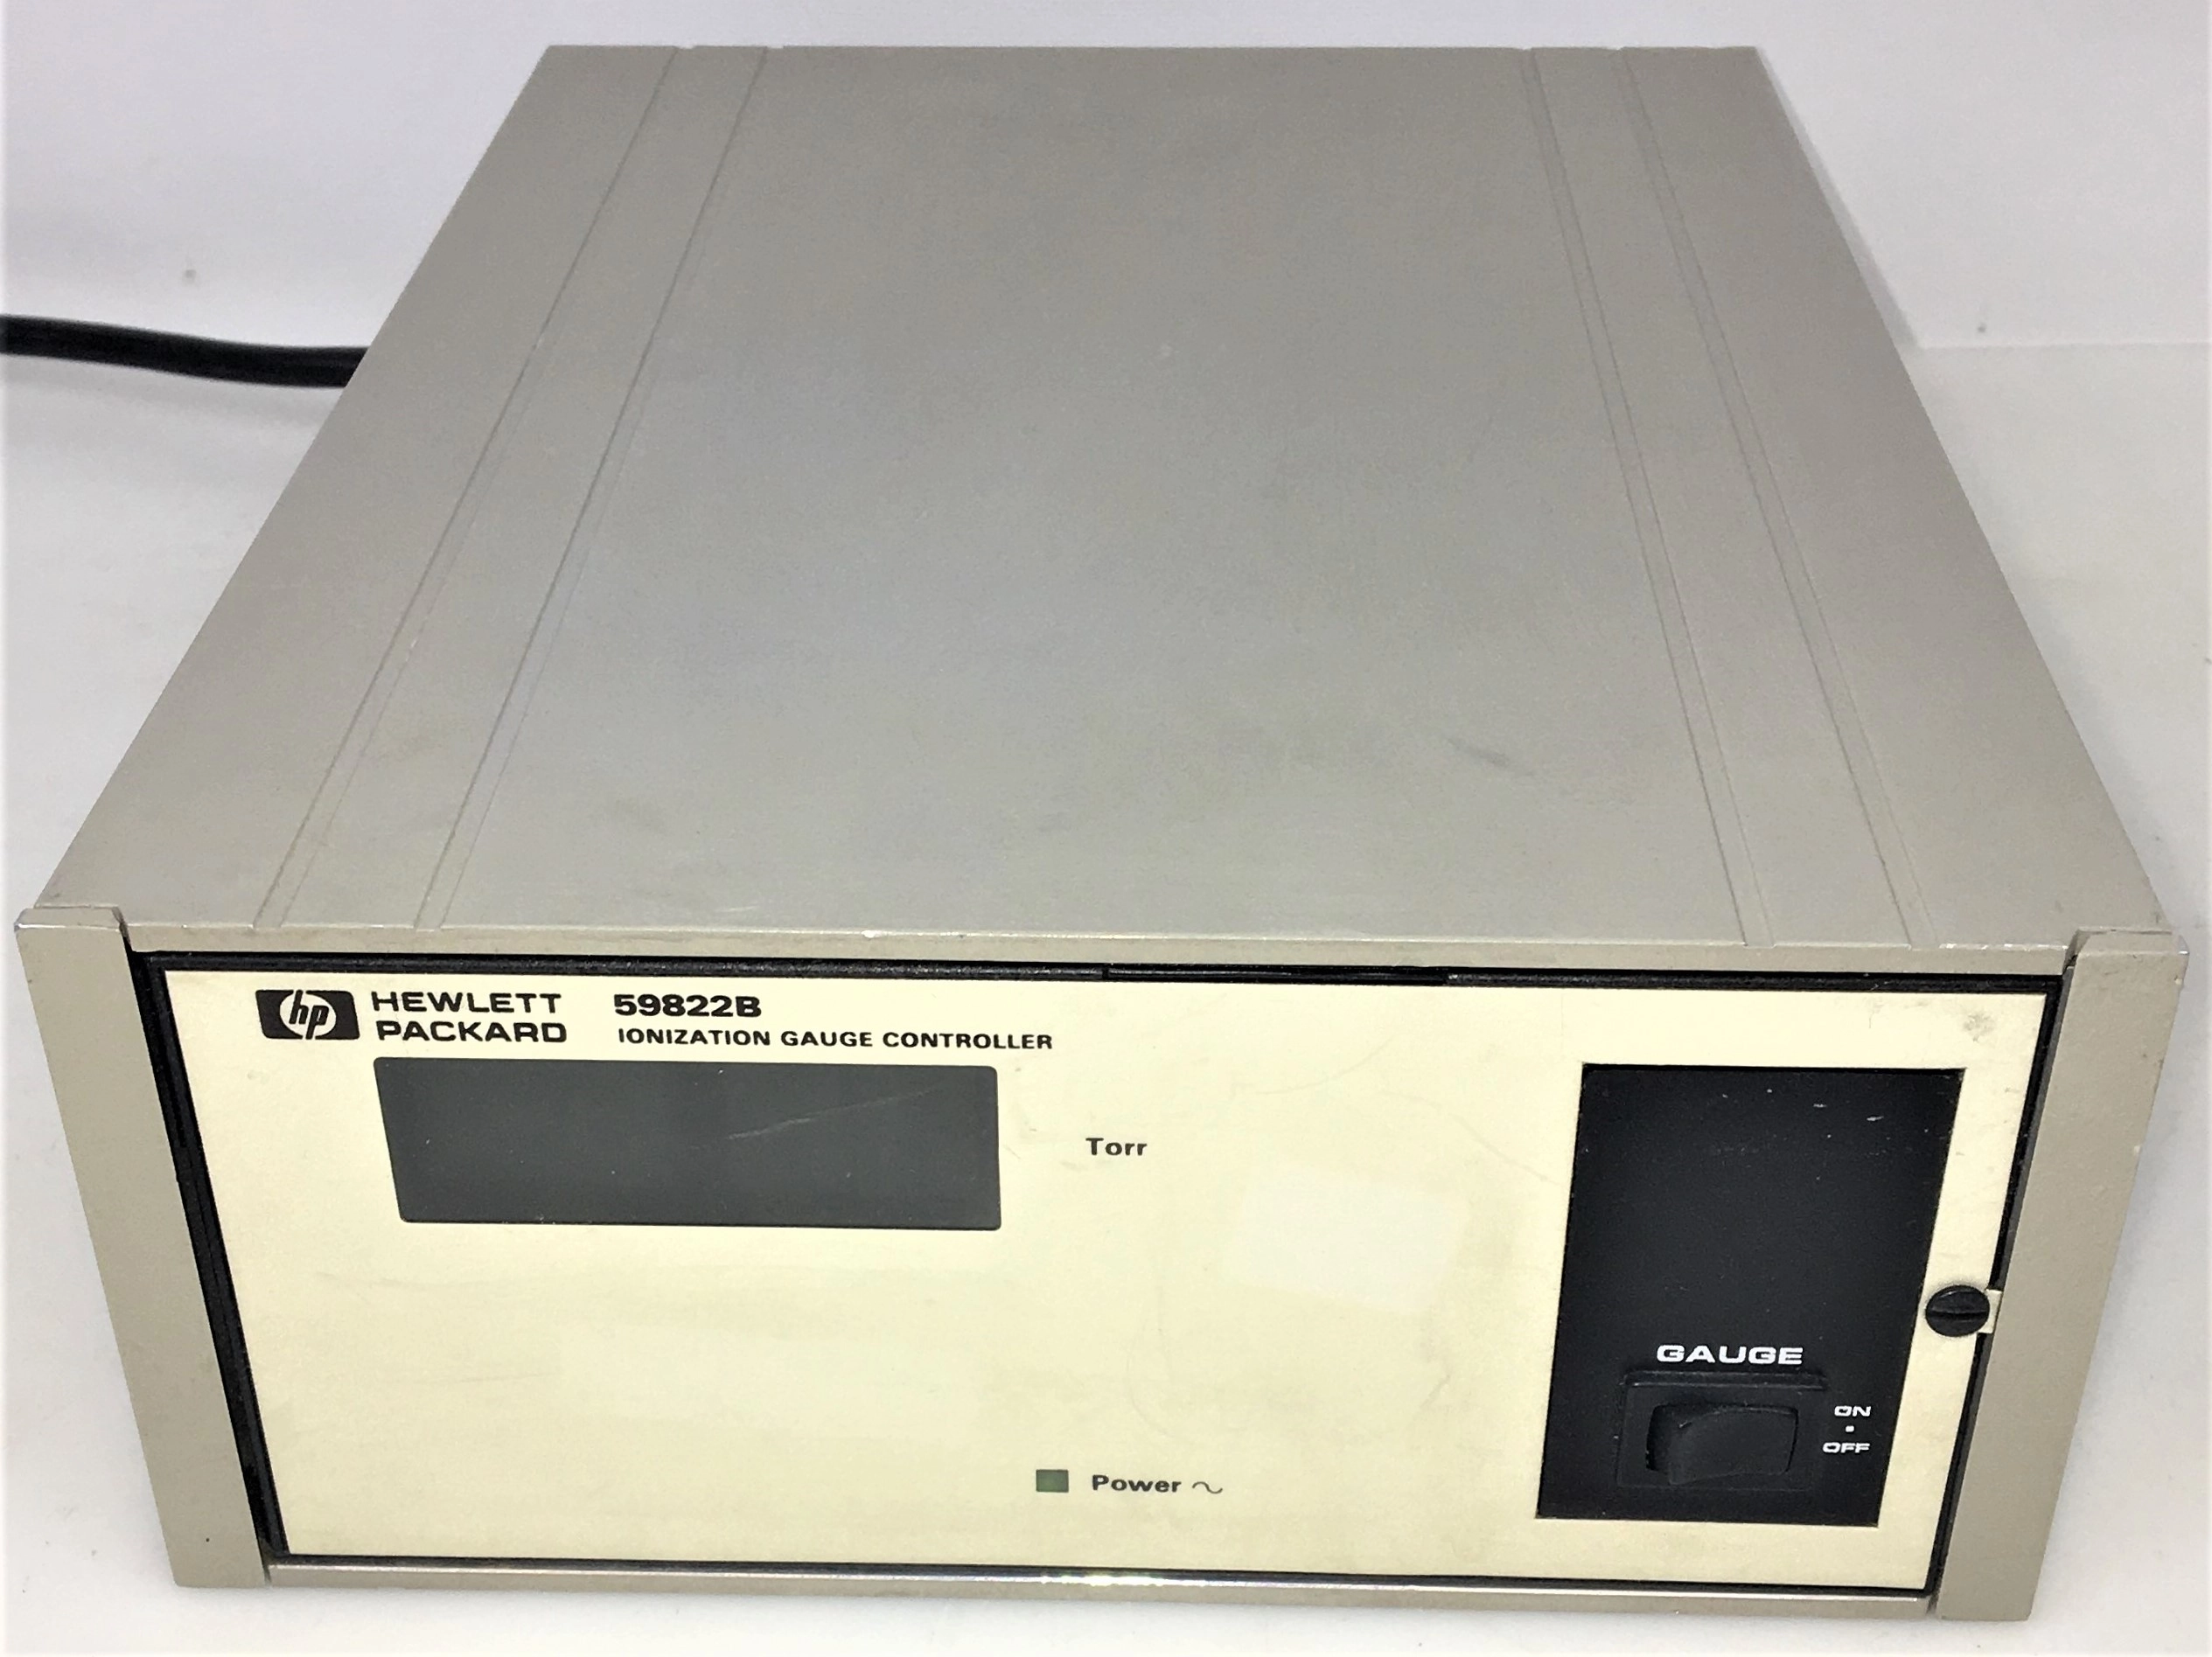 Hewlett Packard 59822B Ionization Gauge Controller